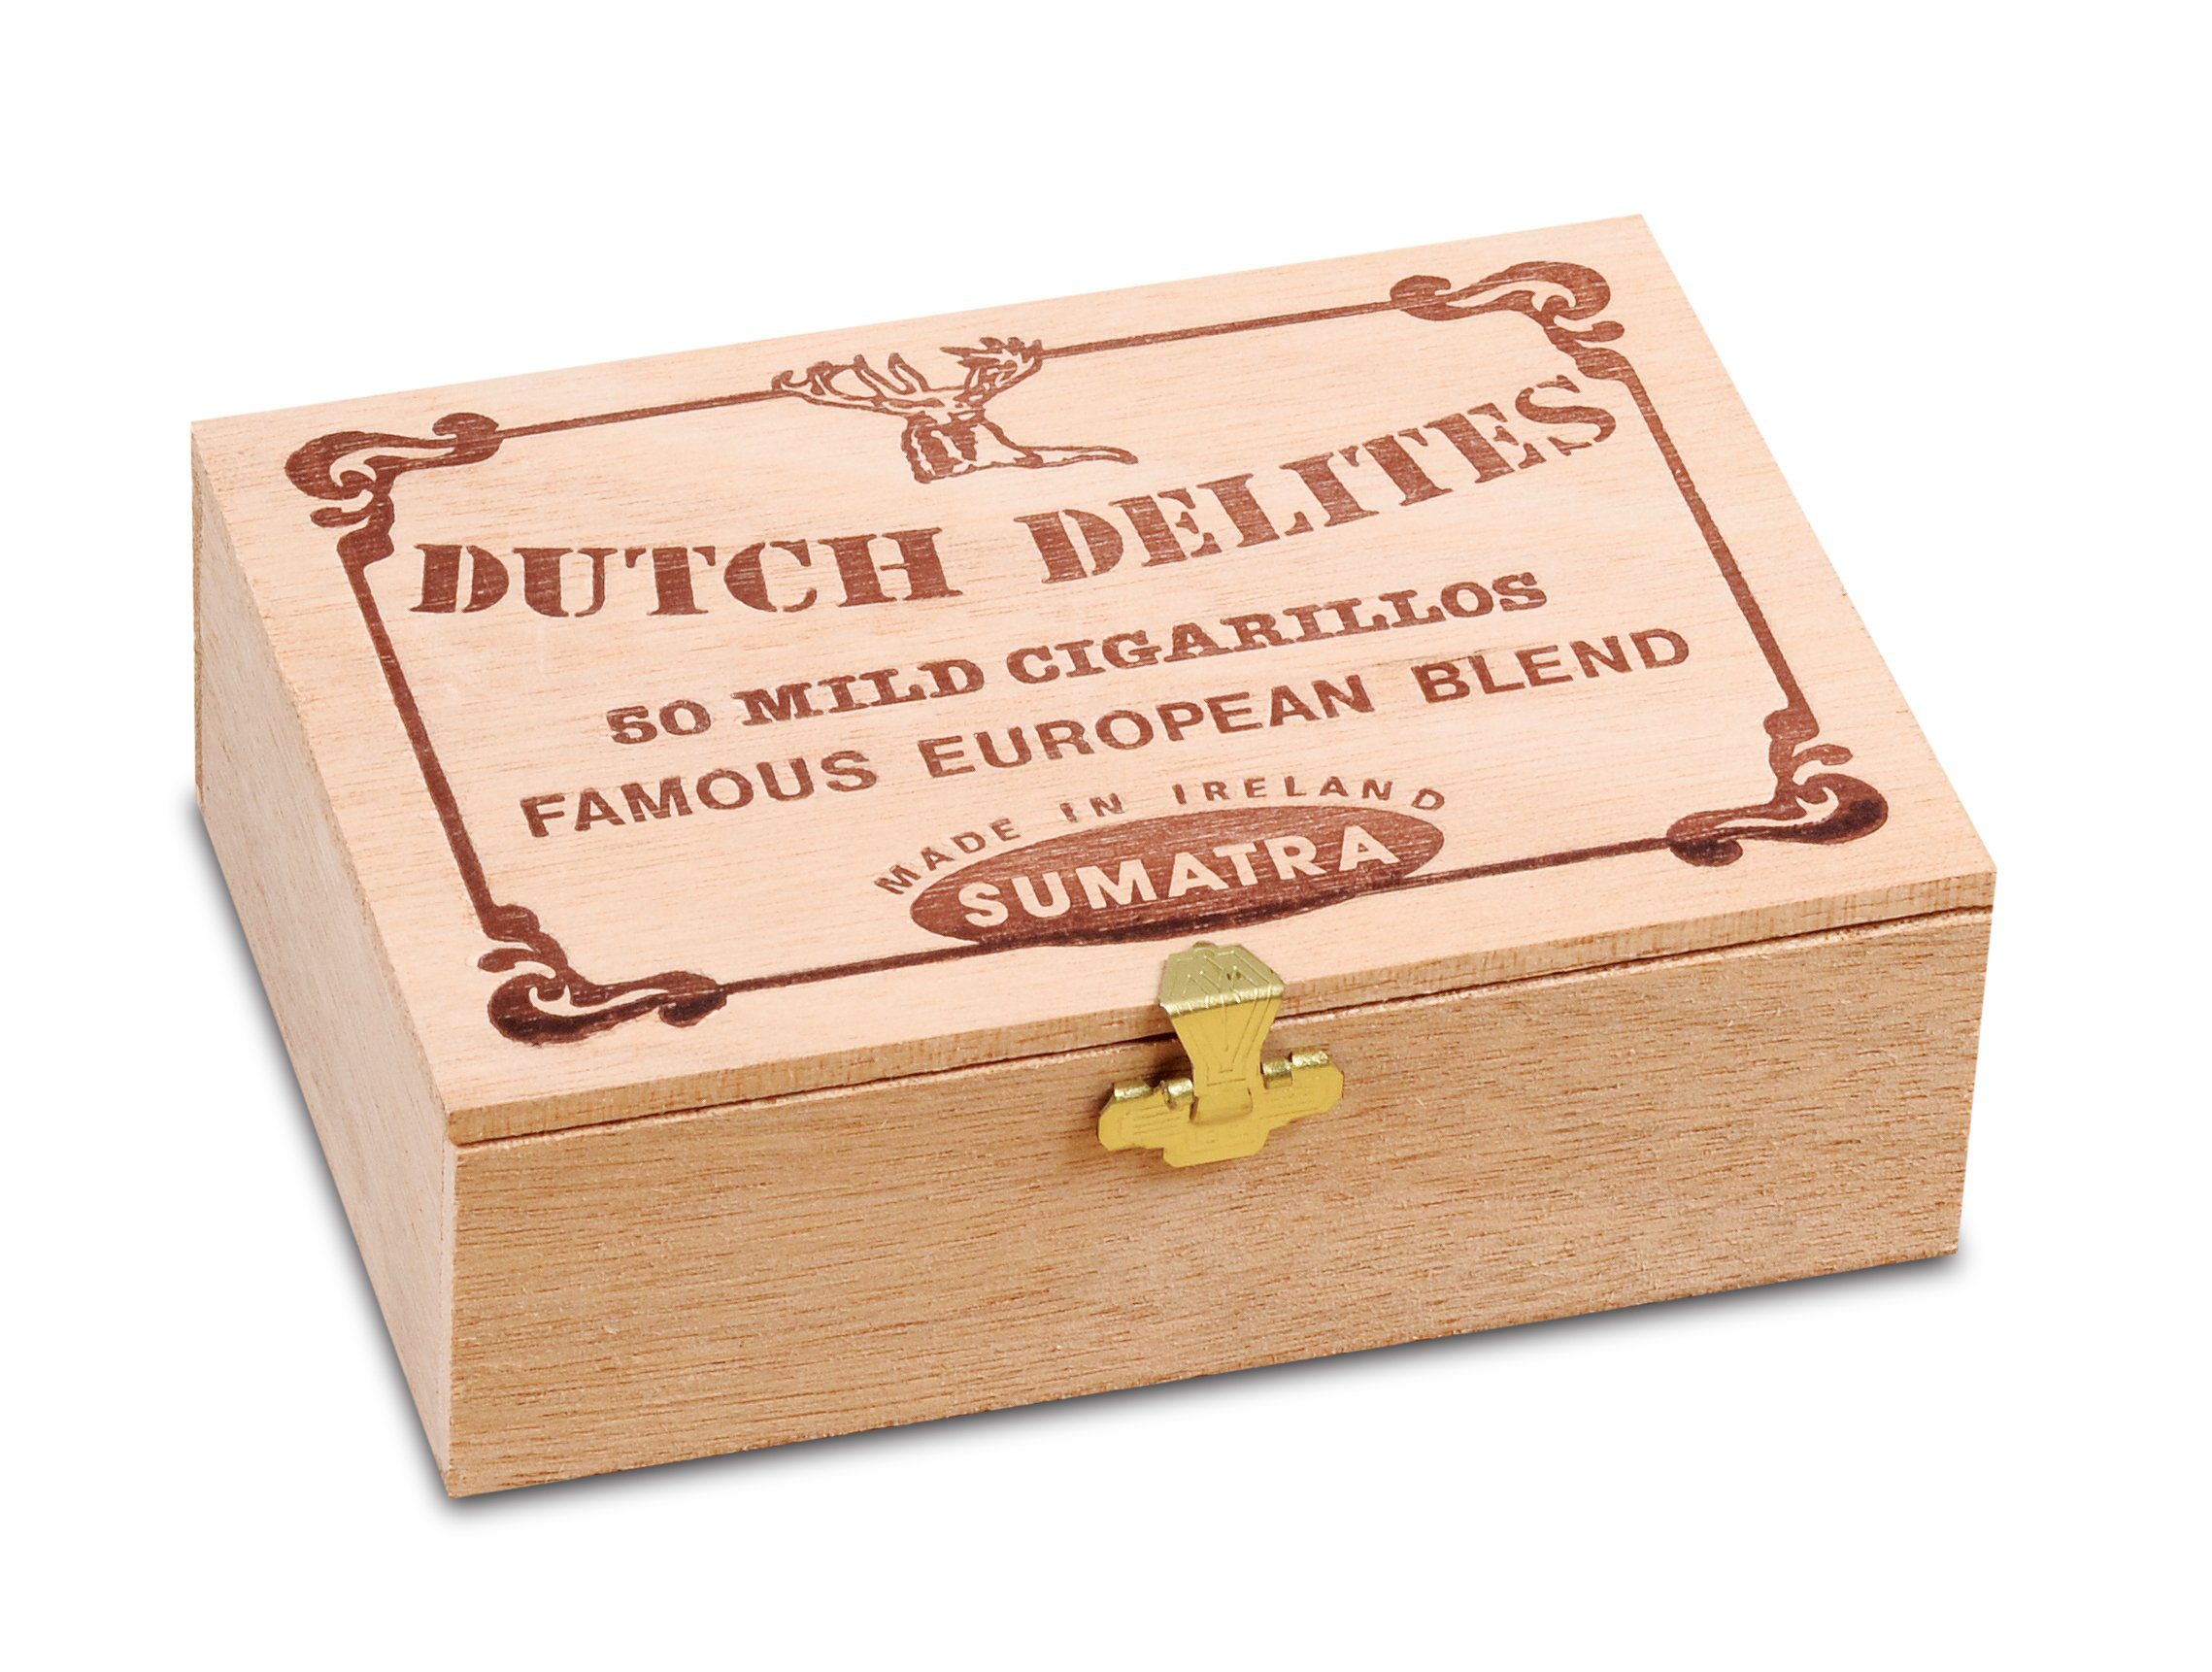 dutch delites sumatra box closed